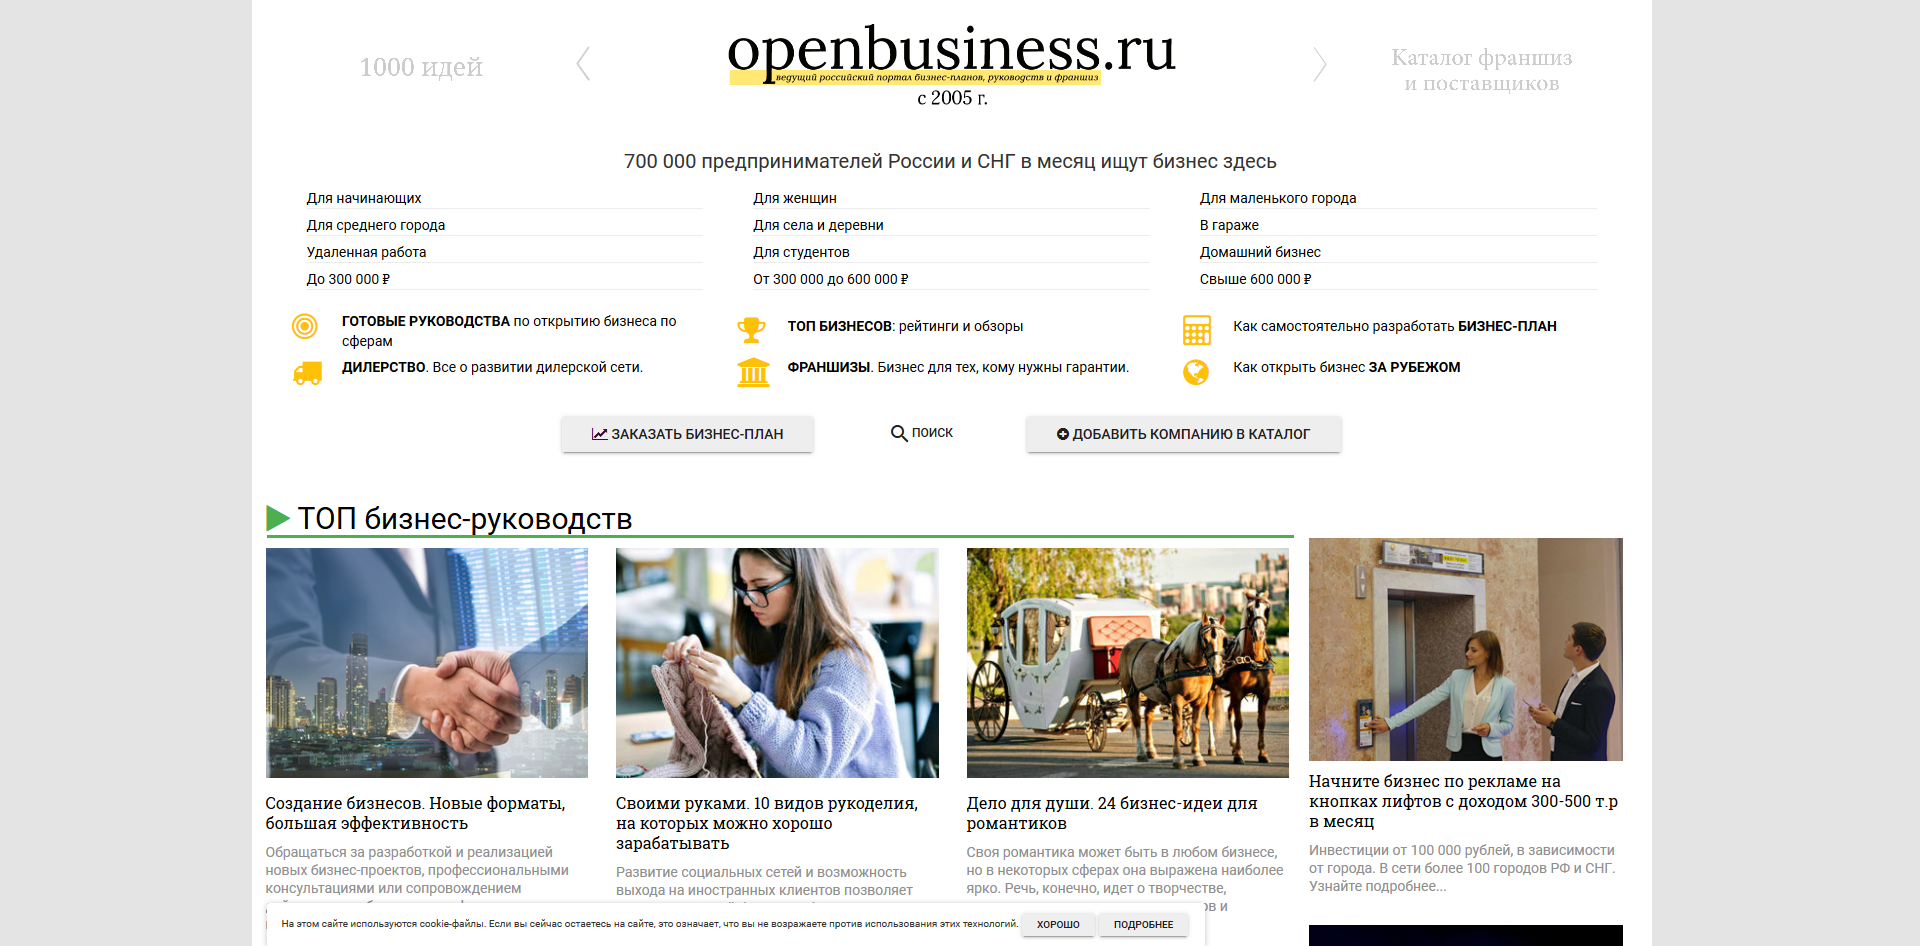 Главная страница российского портала Openbusiness.ru